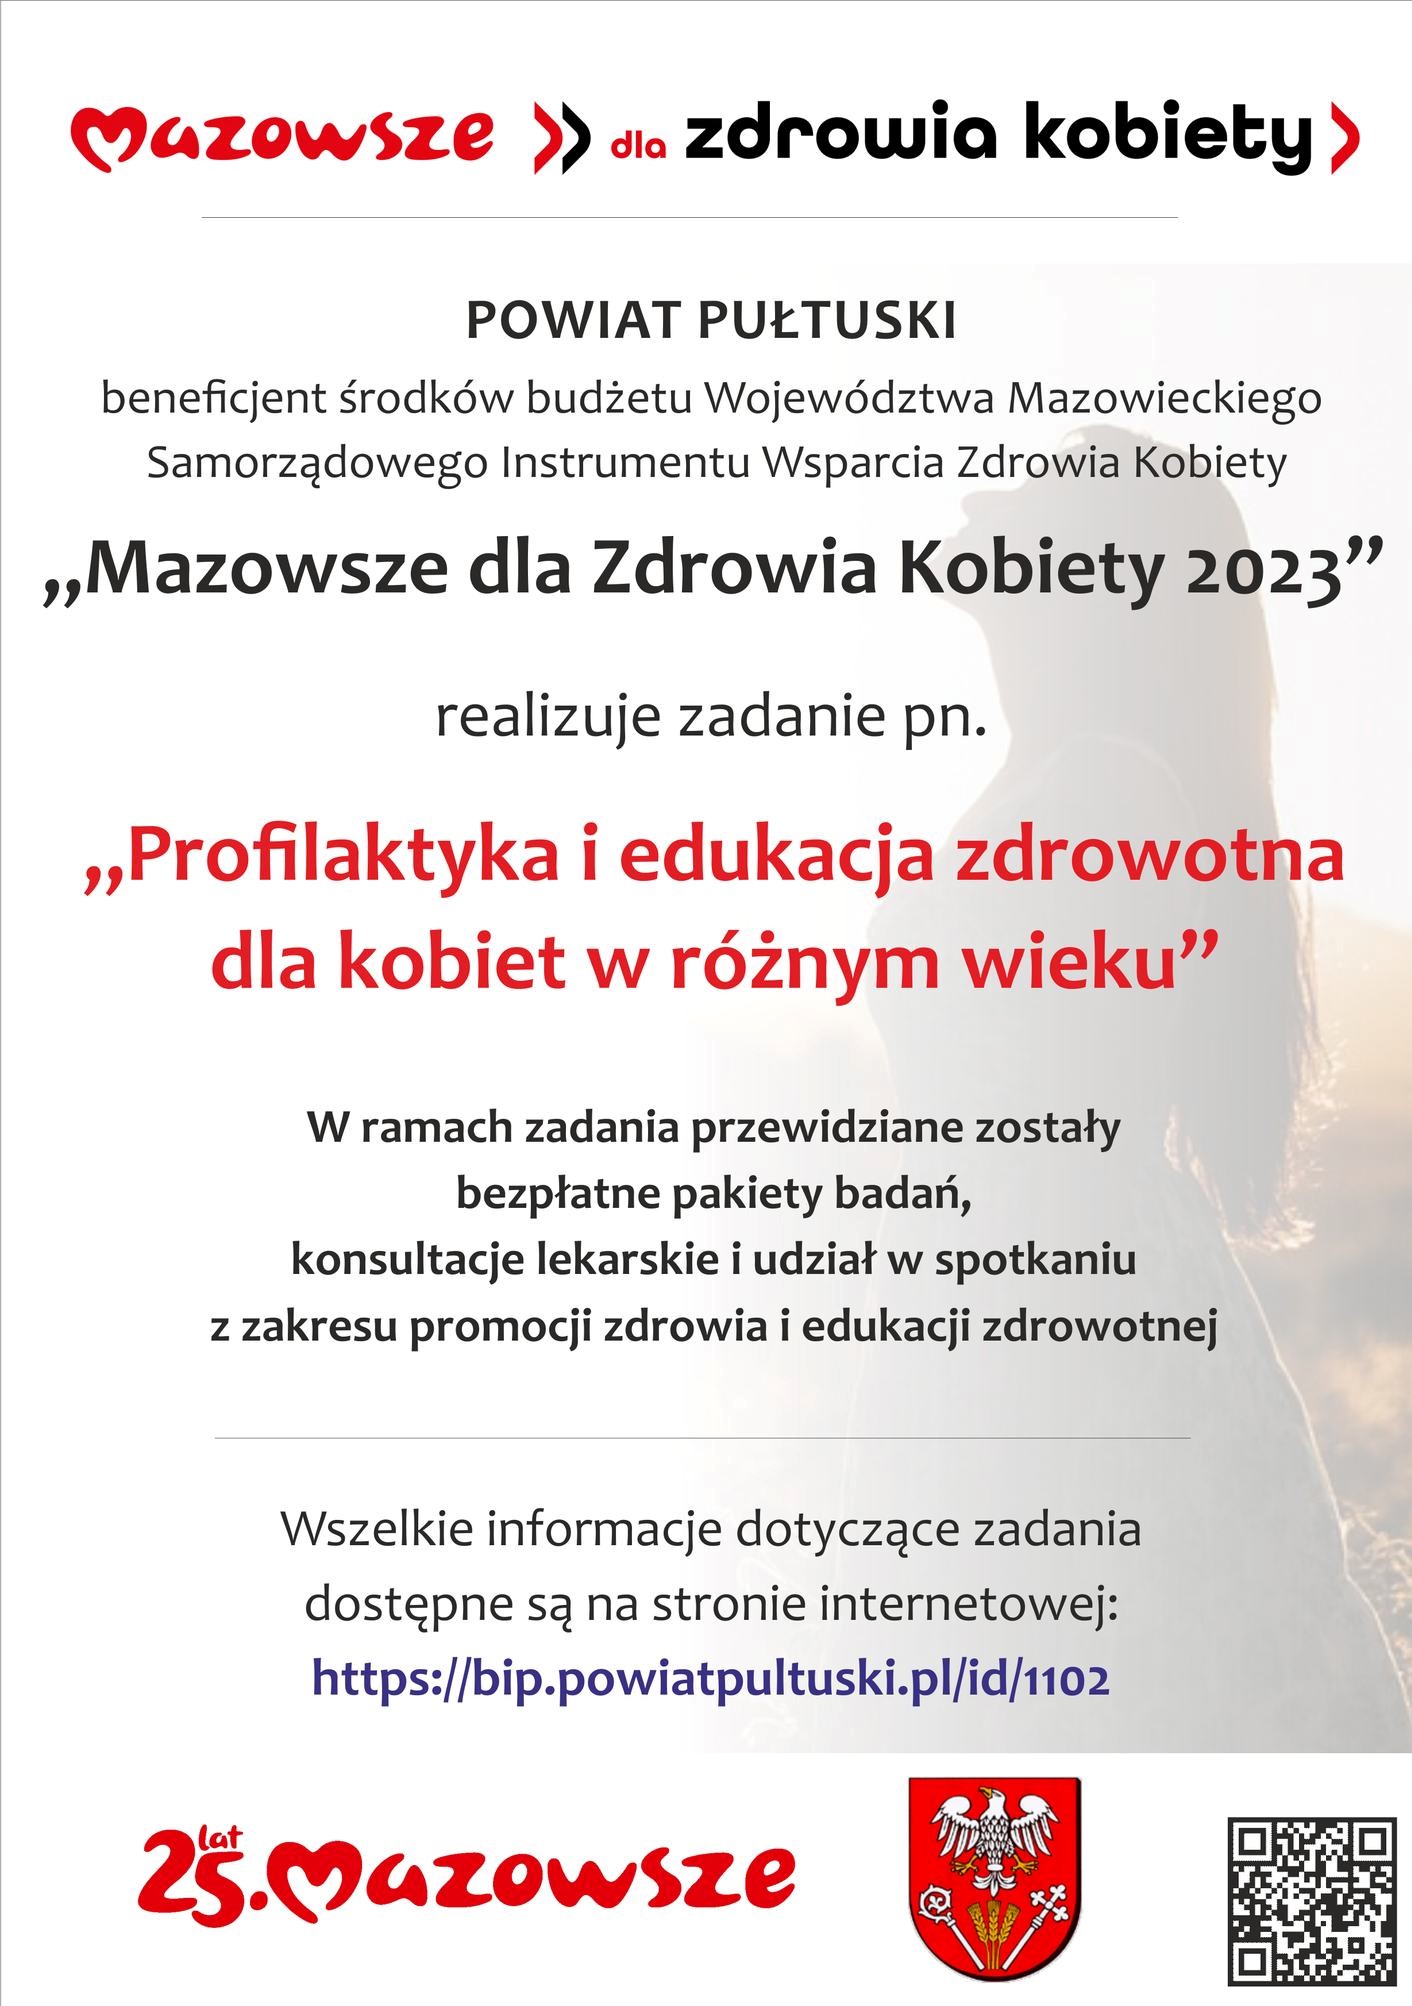 Plakat informujący o realizowanym przez Powiat Pułtuski zadaniu pn. "Profilaktyka i edukacja zdrowotna dla kobiet w różnym wieku", współfinansowanym ze środków budżetu Województwa Mazowieckiego